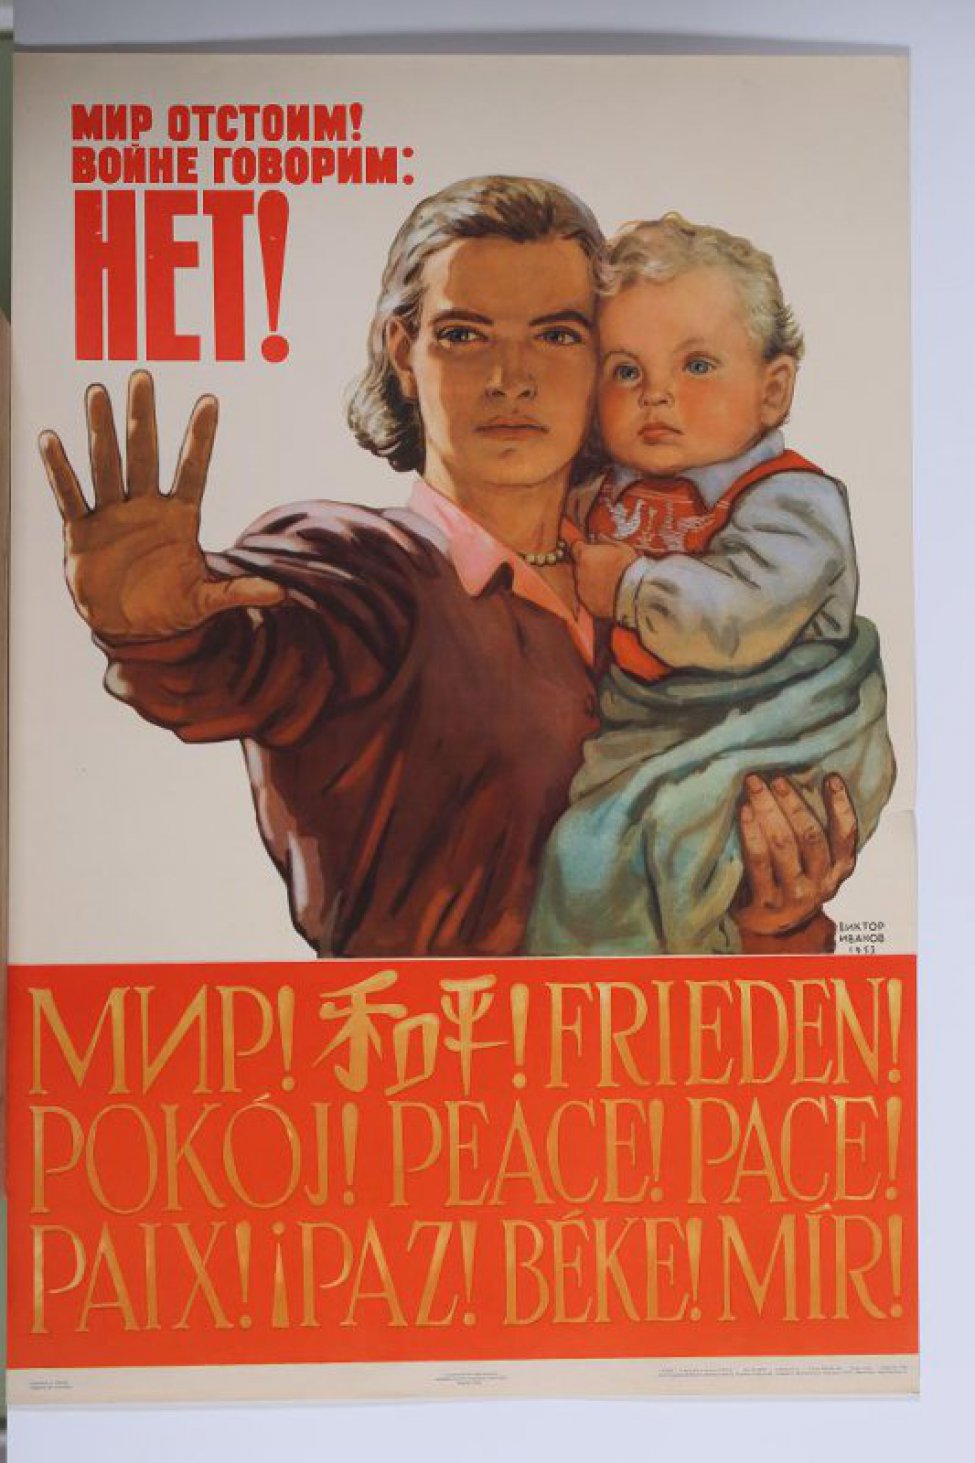 Изображена молодая женщина с ребенком на одной руке. Другая ее рука  протянута вперед.Внизу на красном слове на разных языках слово"мир".